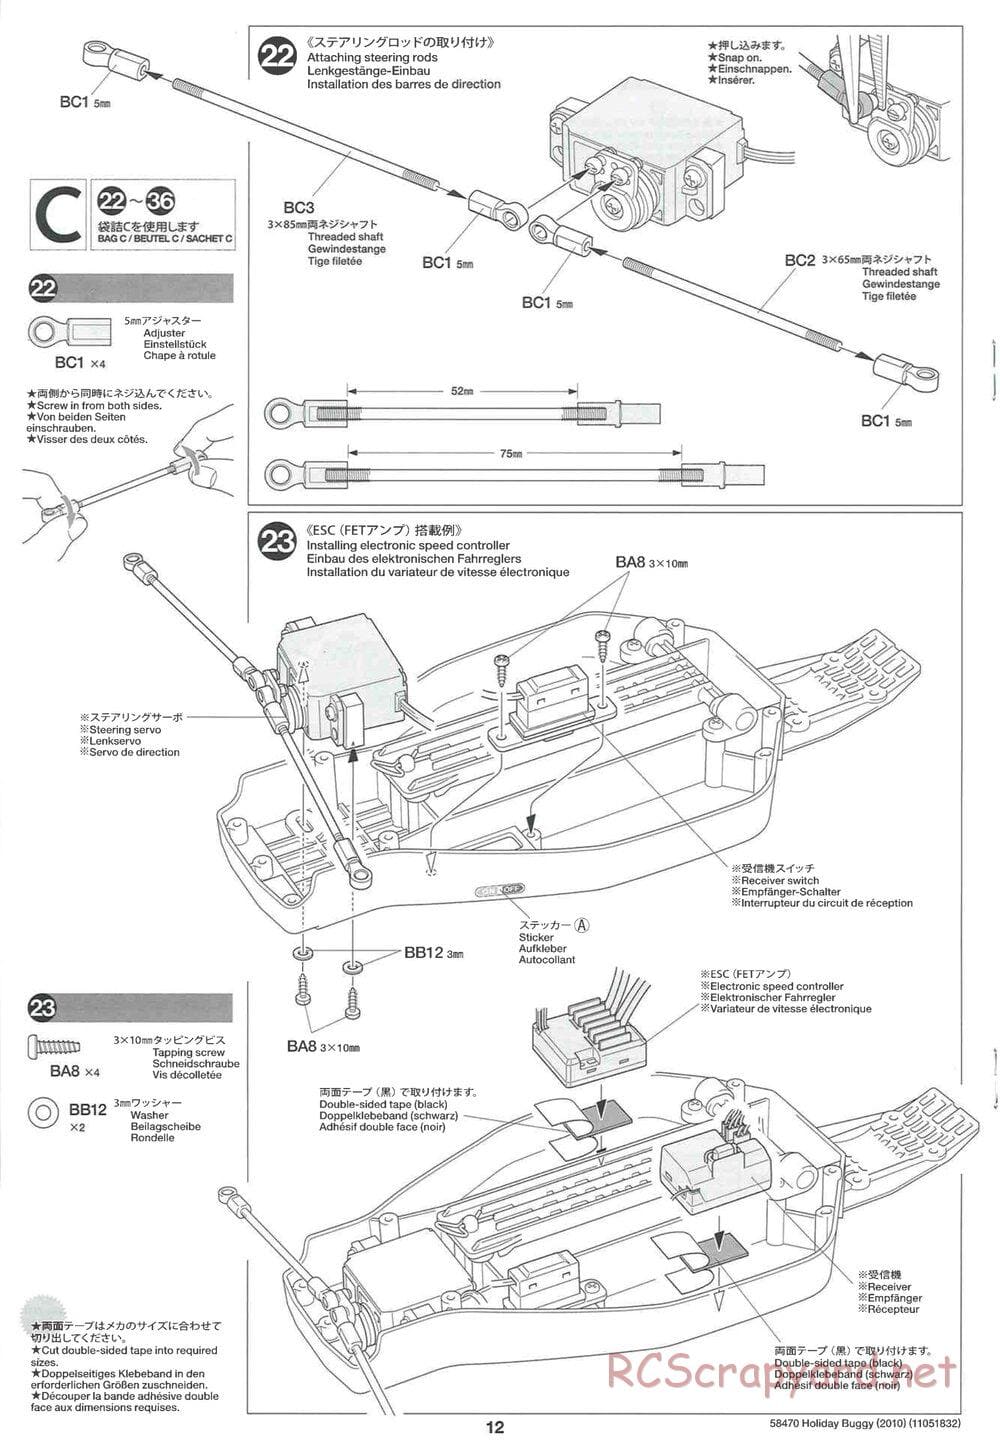 Tamiya - Holiday Buggy 2010 Chassis - Manual - Page 12